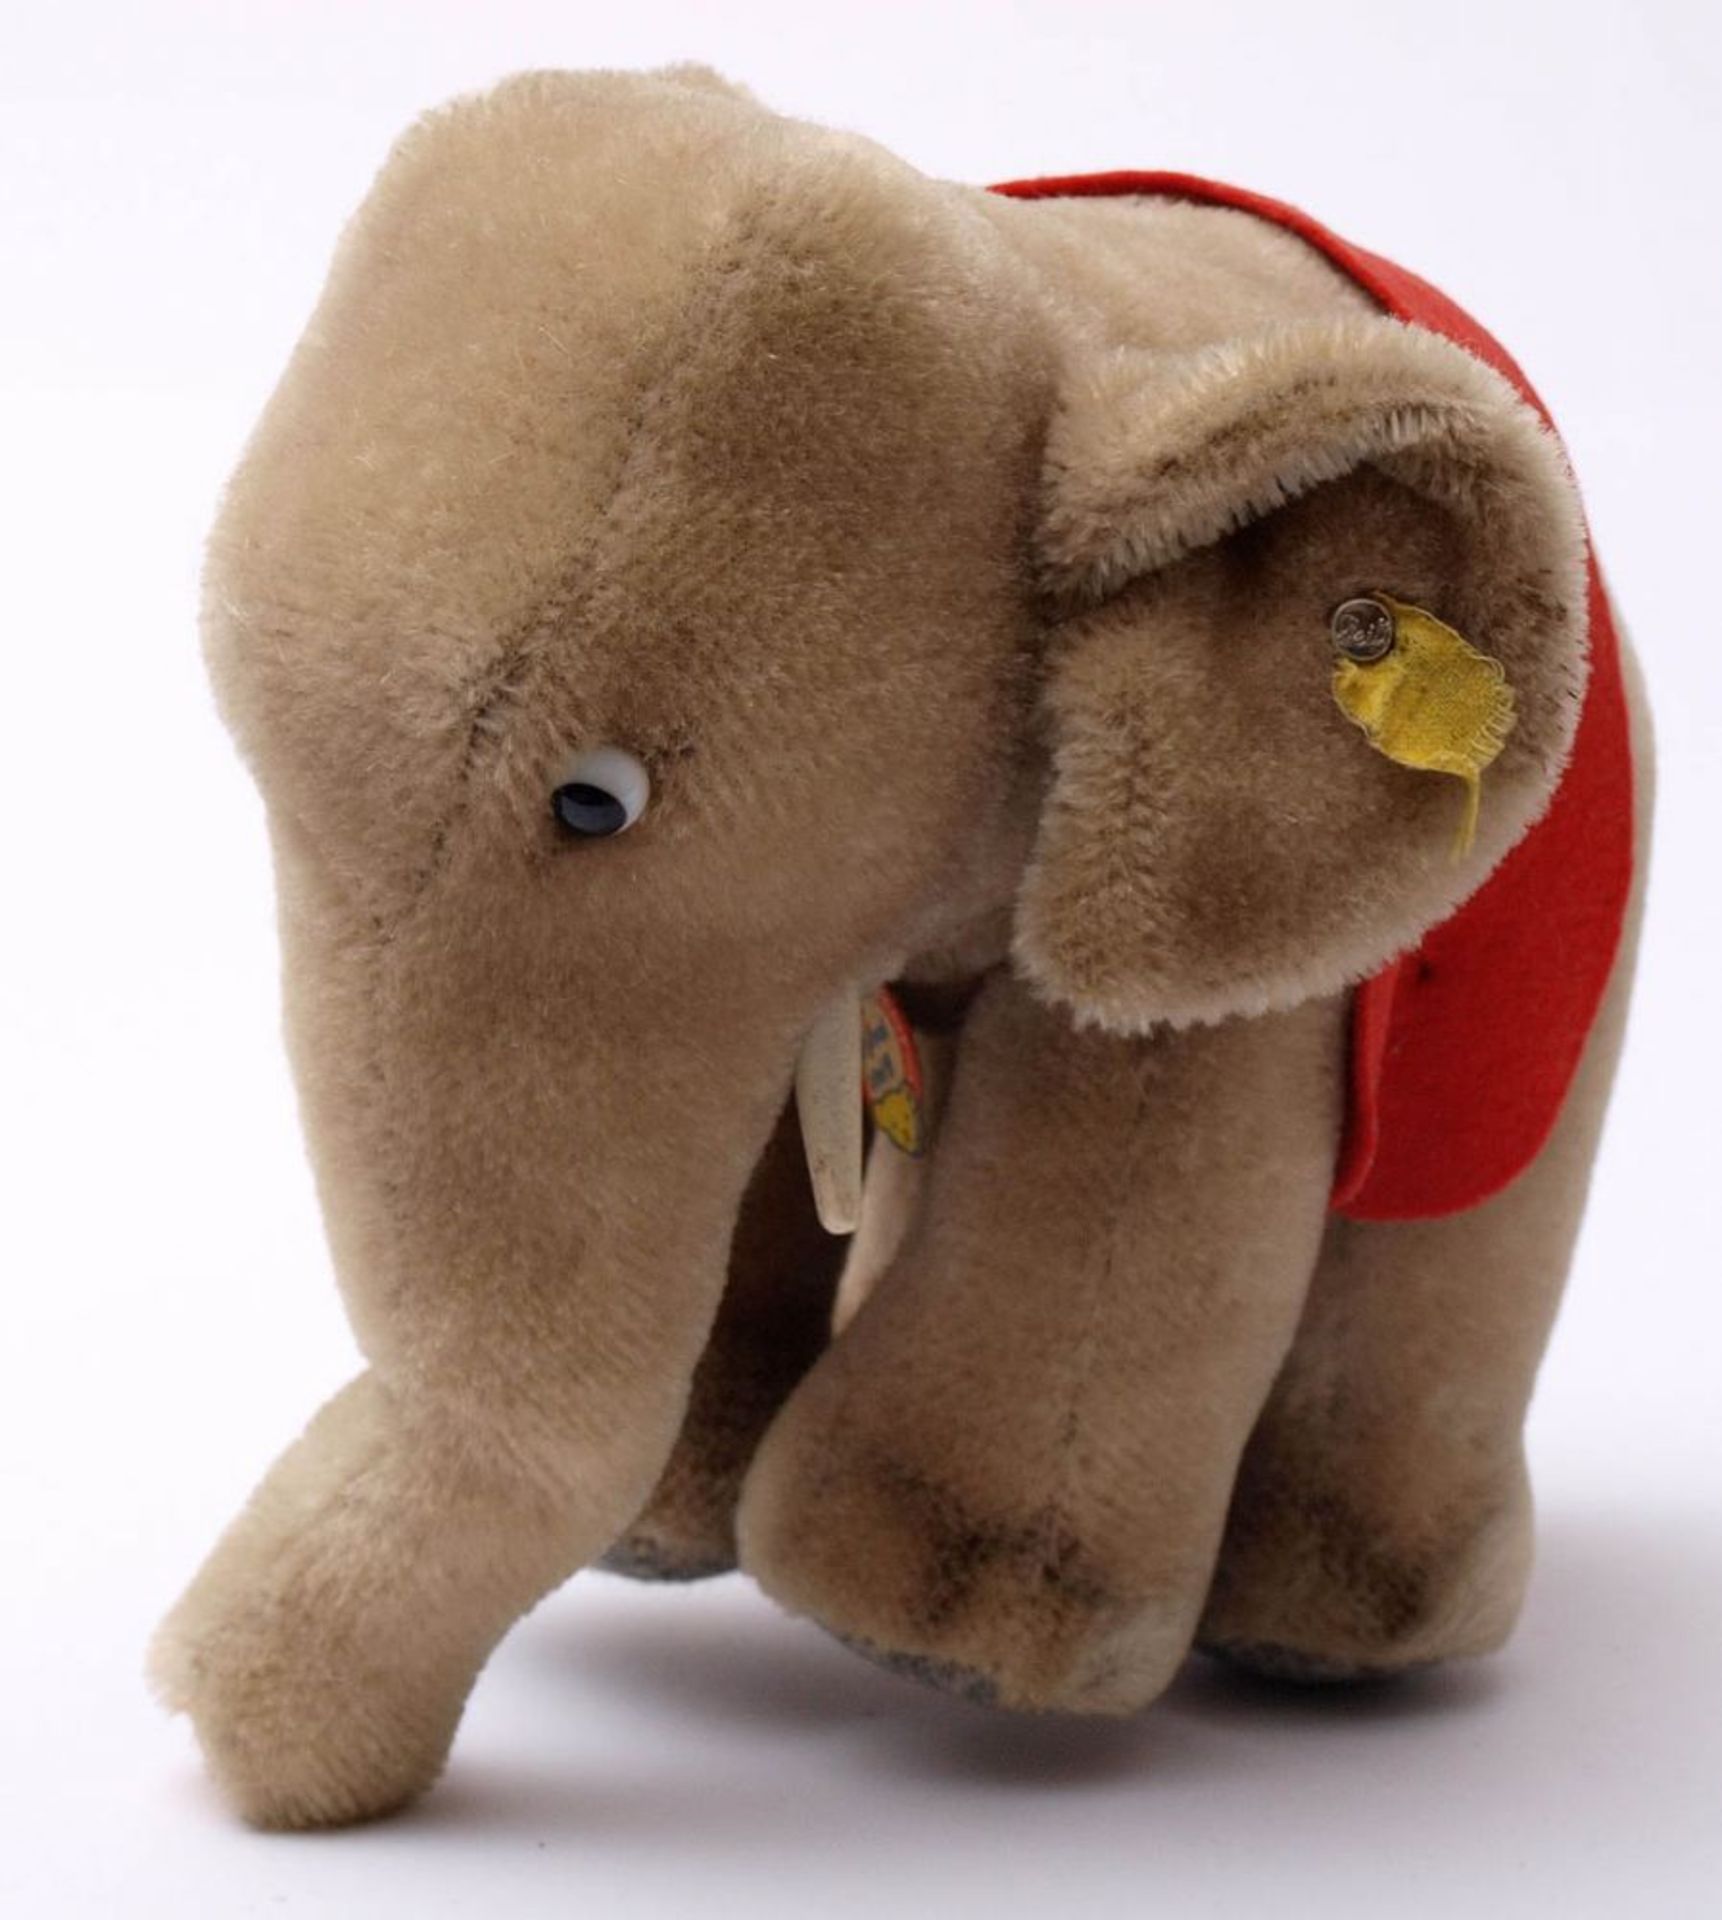 Elefant, Steiff Mit Fahne, Knopf und Schild. H.15cm. - Bild 2 aus 2